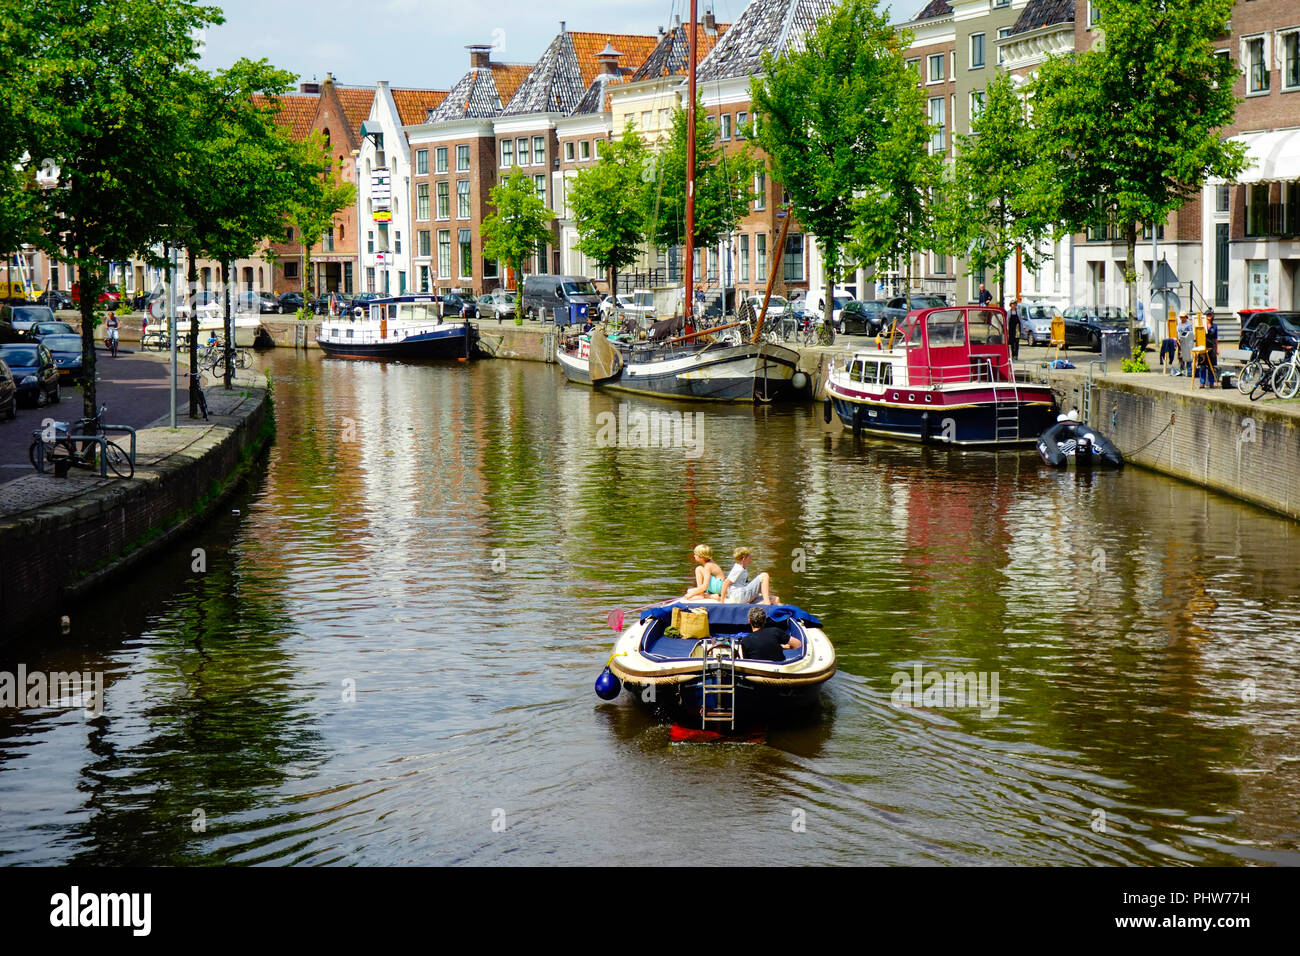 Canal de la ville de Groningen, Pays-Bas, Groningen Banque D'Images